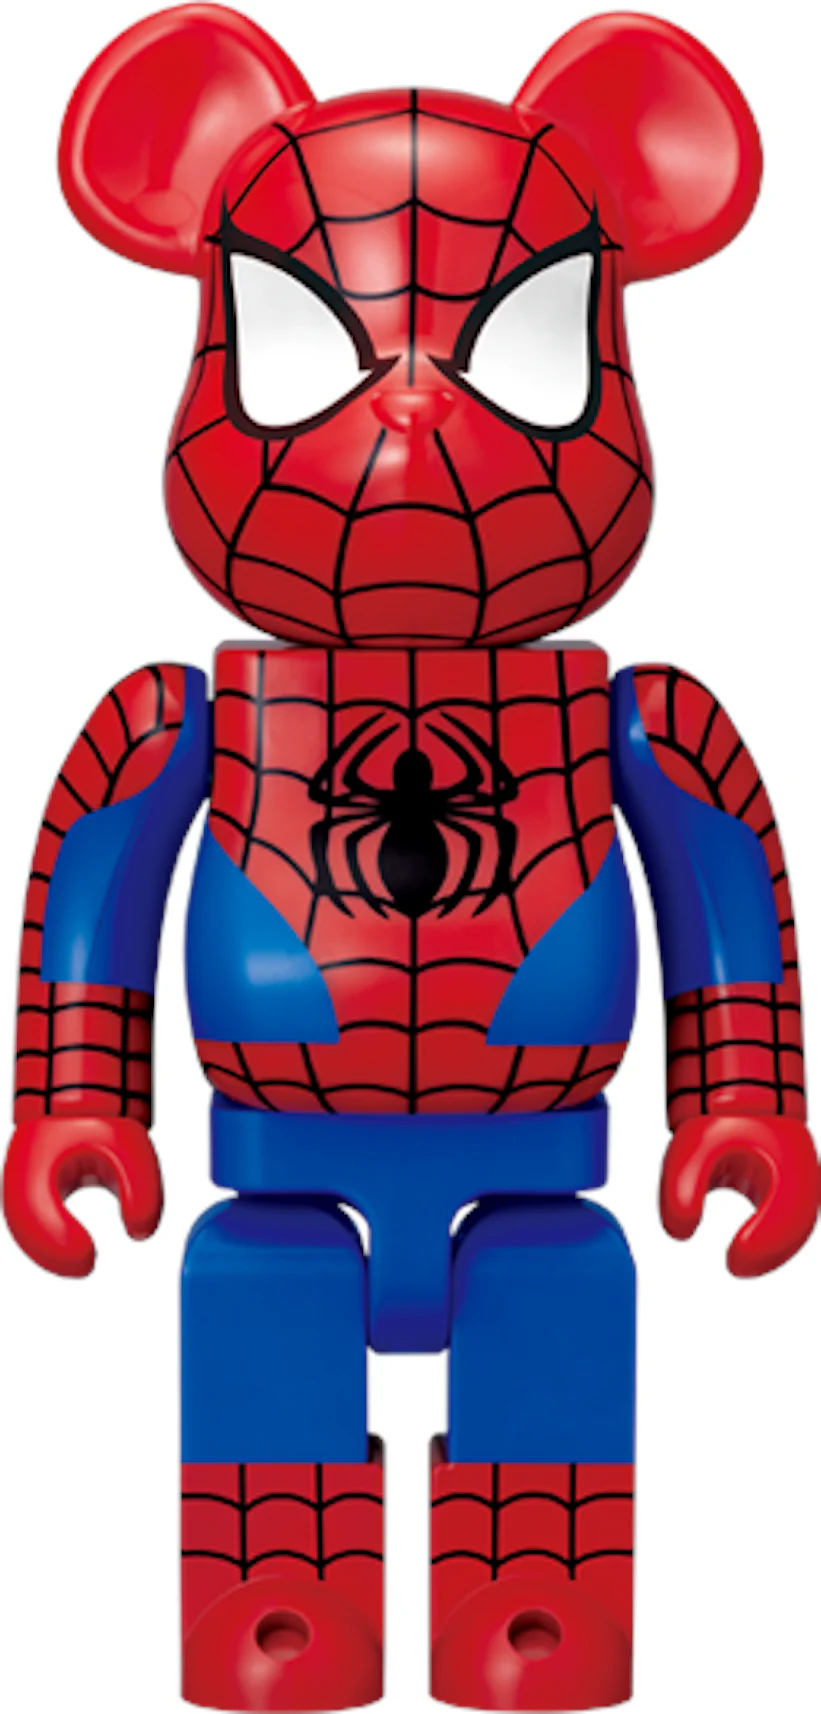 Bearbrick x Spider-Man 400% Red (2012 Version)